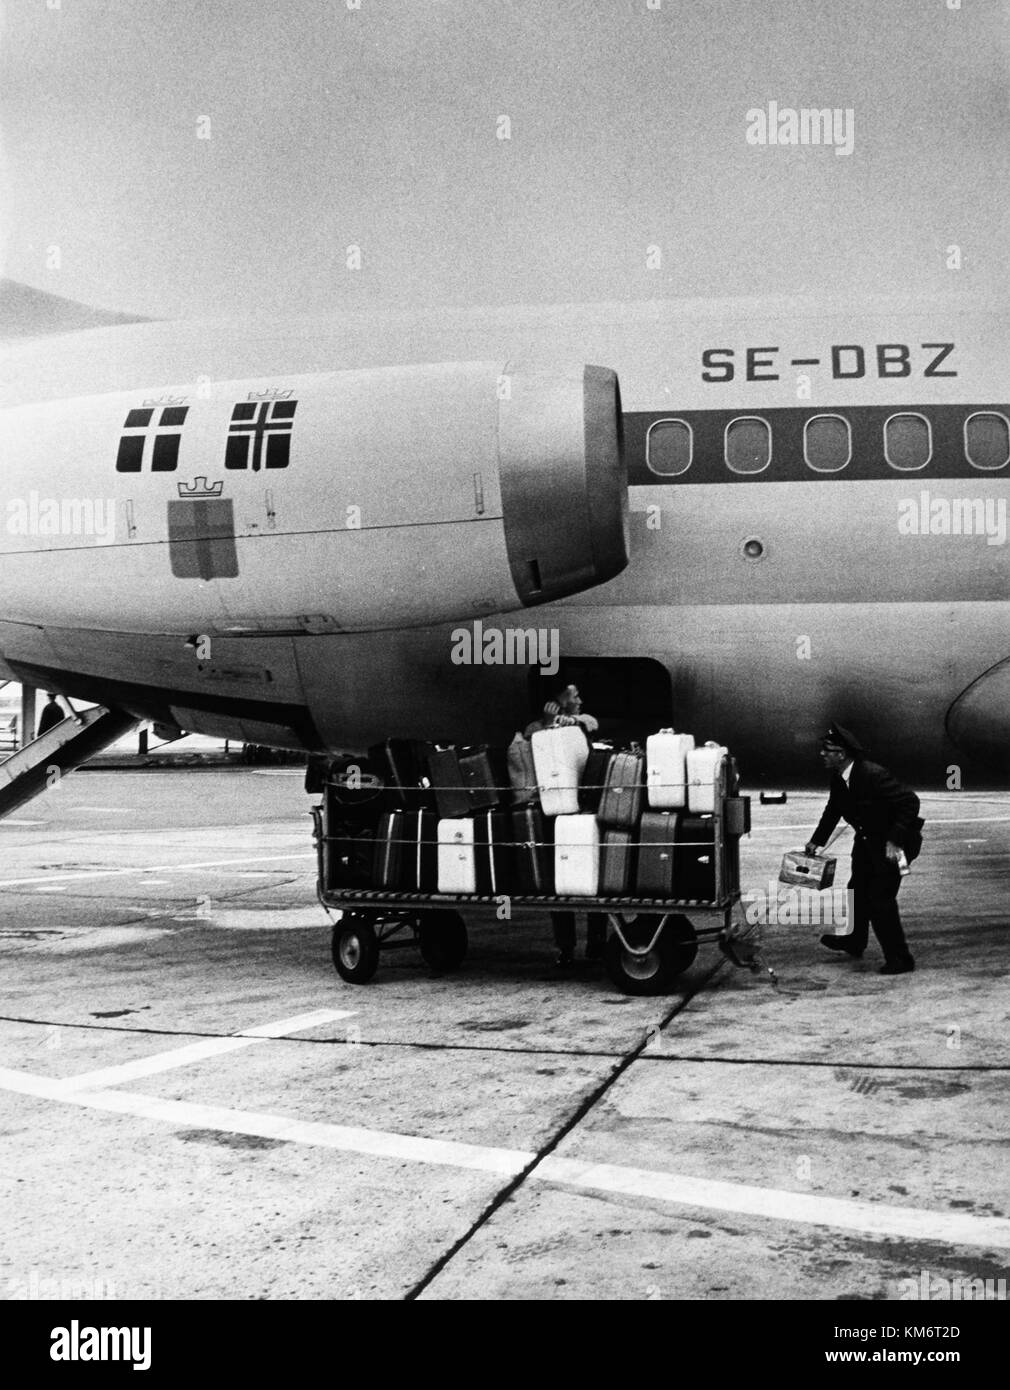 SAS DC 9 30, Kettil Viking se DBZ, arrendada a Swissair, en tierra,  cargando equipaje Fotografía de stock - Alamy